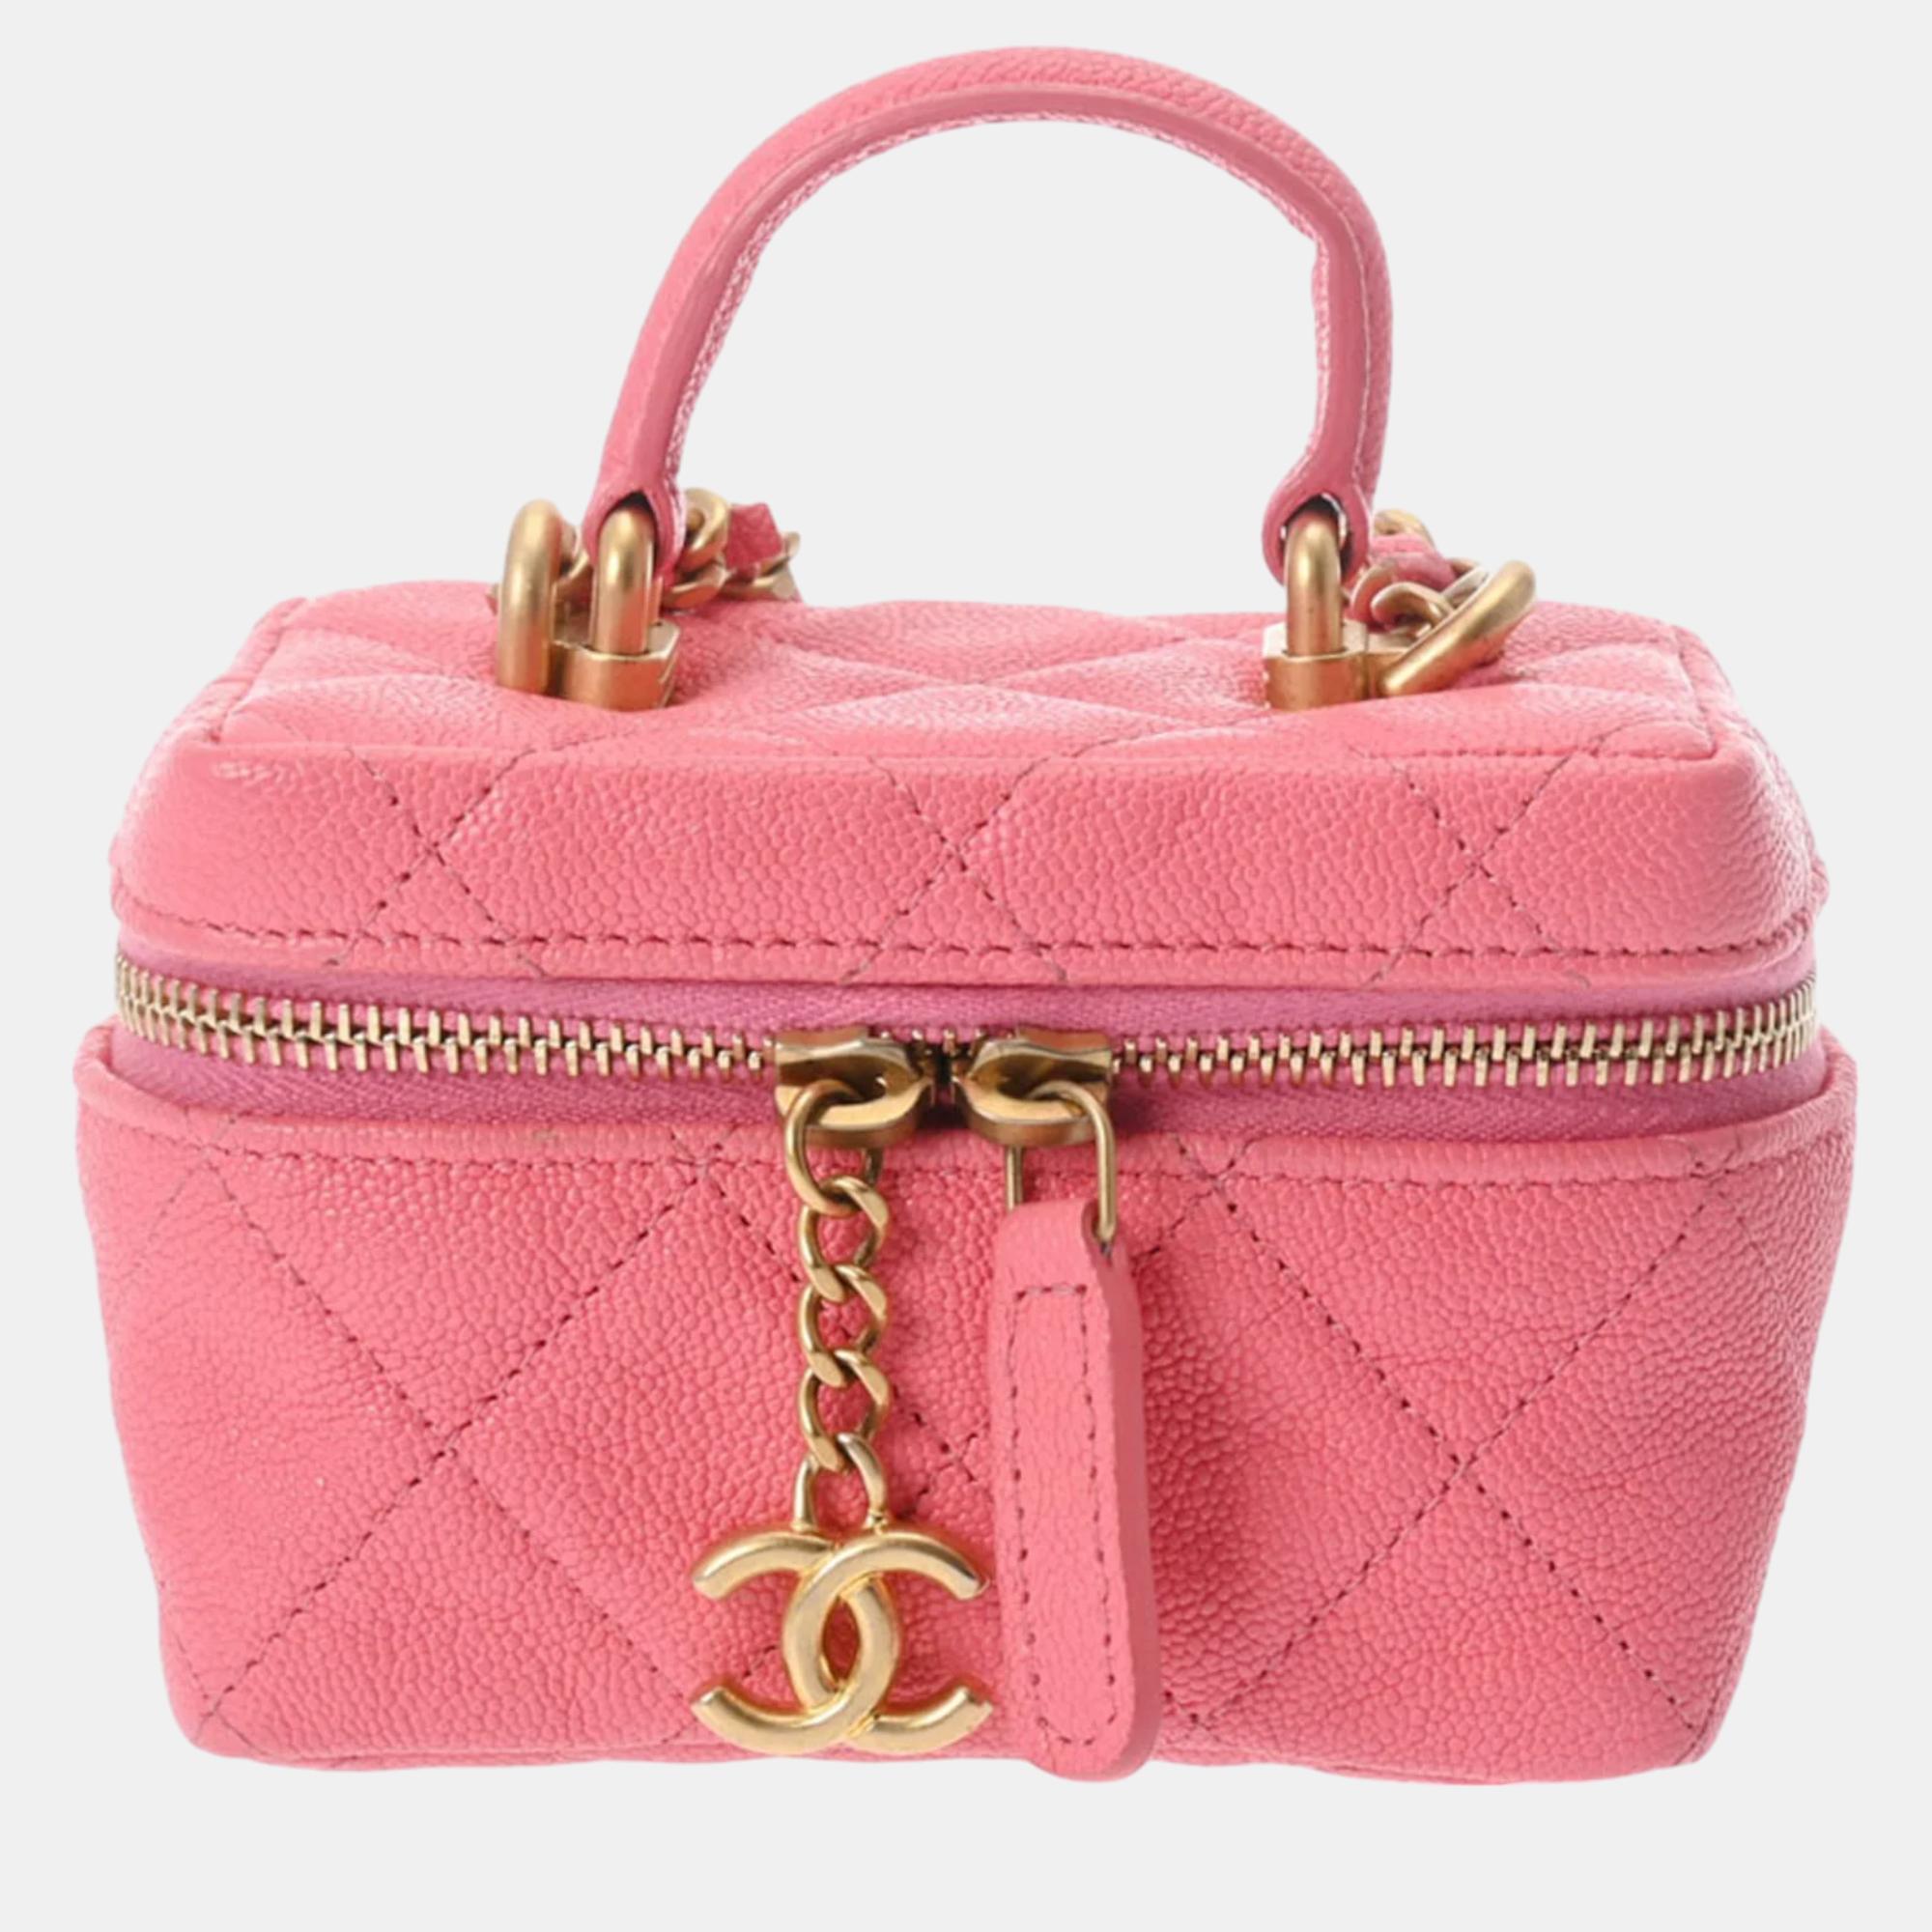 Chanel pink leather small vanity case shoulder bag